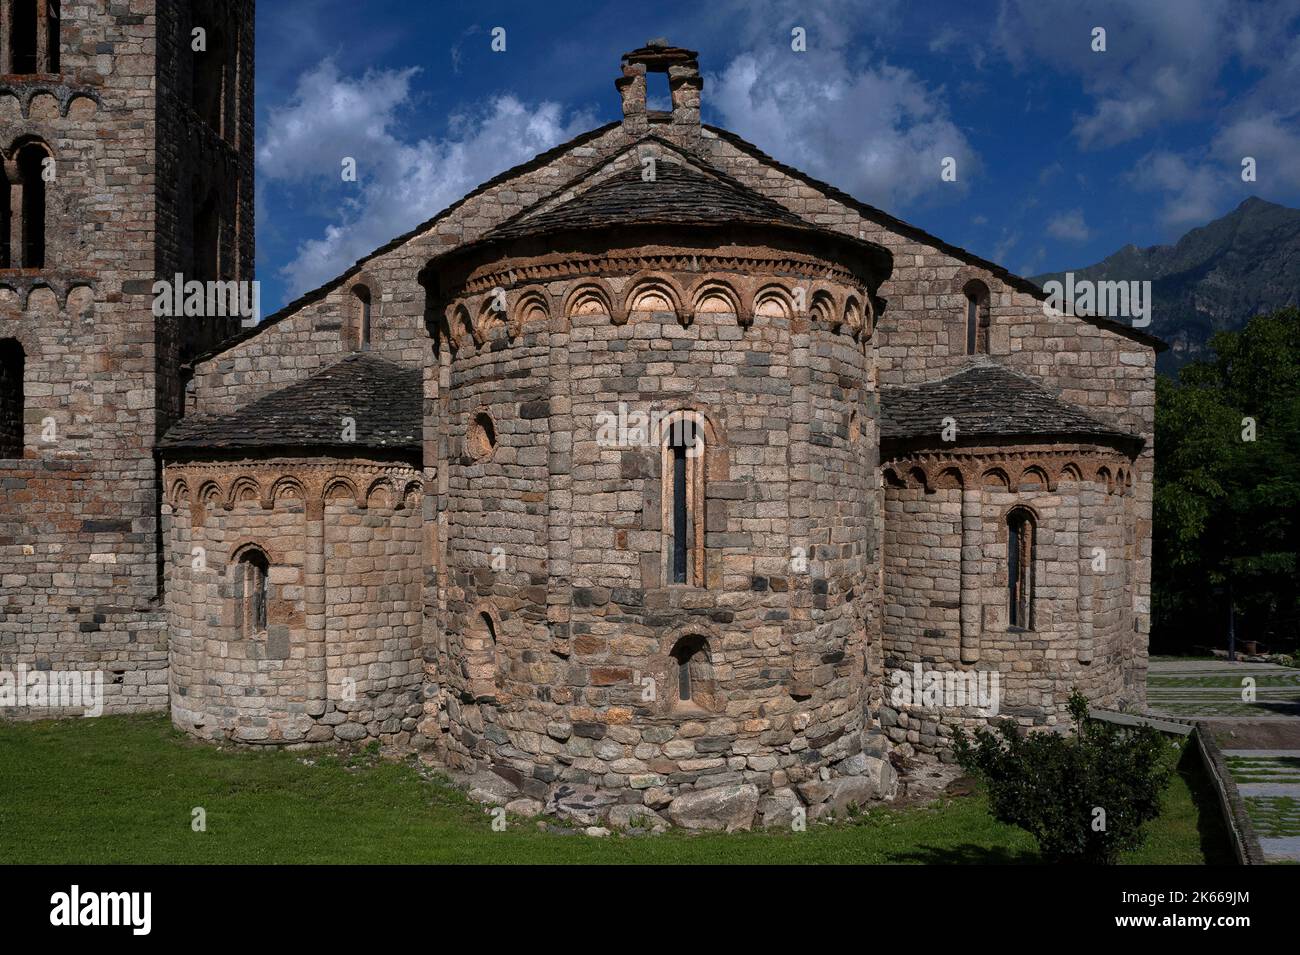 Église romane de Sant Climent, construite au début de 1100s, dans le village de Vall de Boí de Taüll, Catalogne, Espagne. L'église a trois apses orientales semi-circulaires, toutes avec une simple décoration Lombard et des fenêtres à fentes rondes, et un beffroi de style italien. Banque D'Images